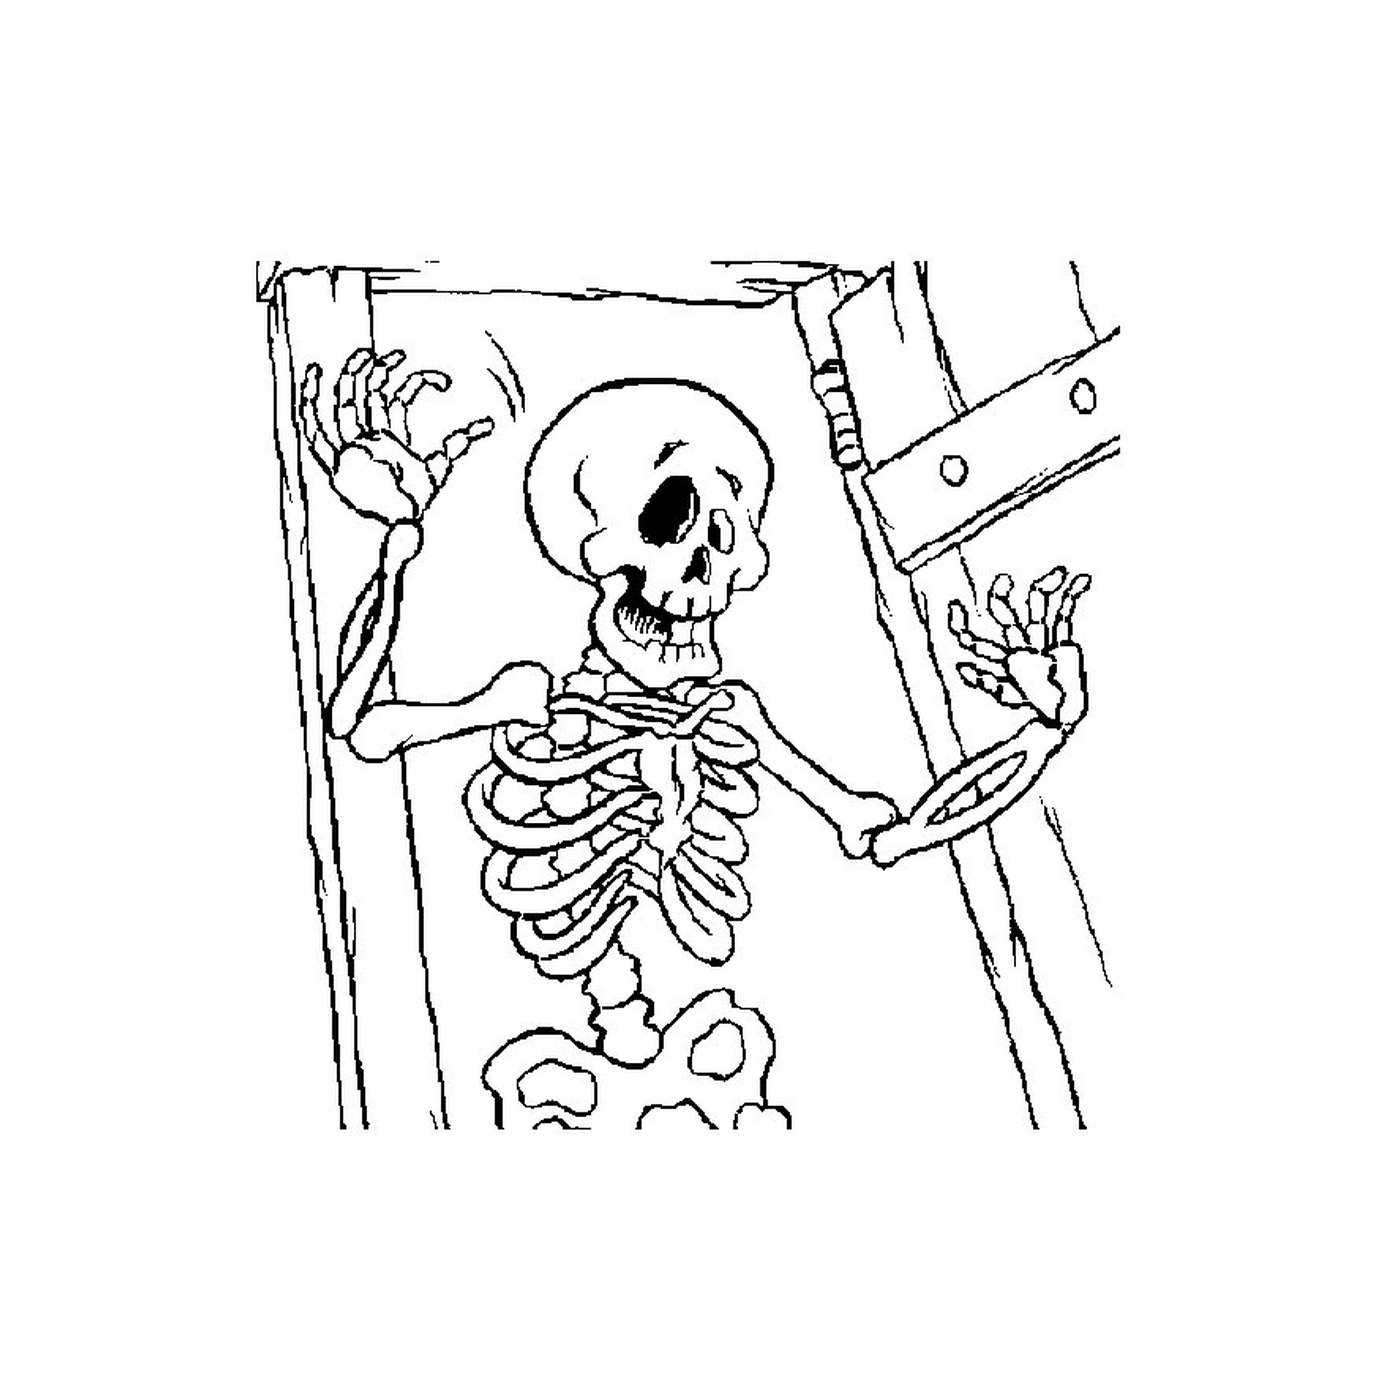  Esqueleto en una habitación oscura 